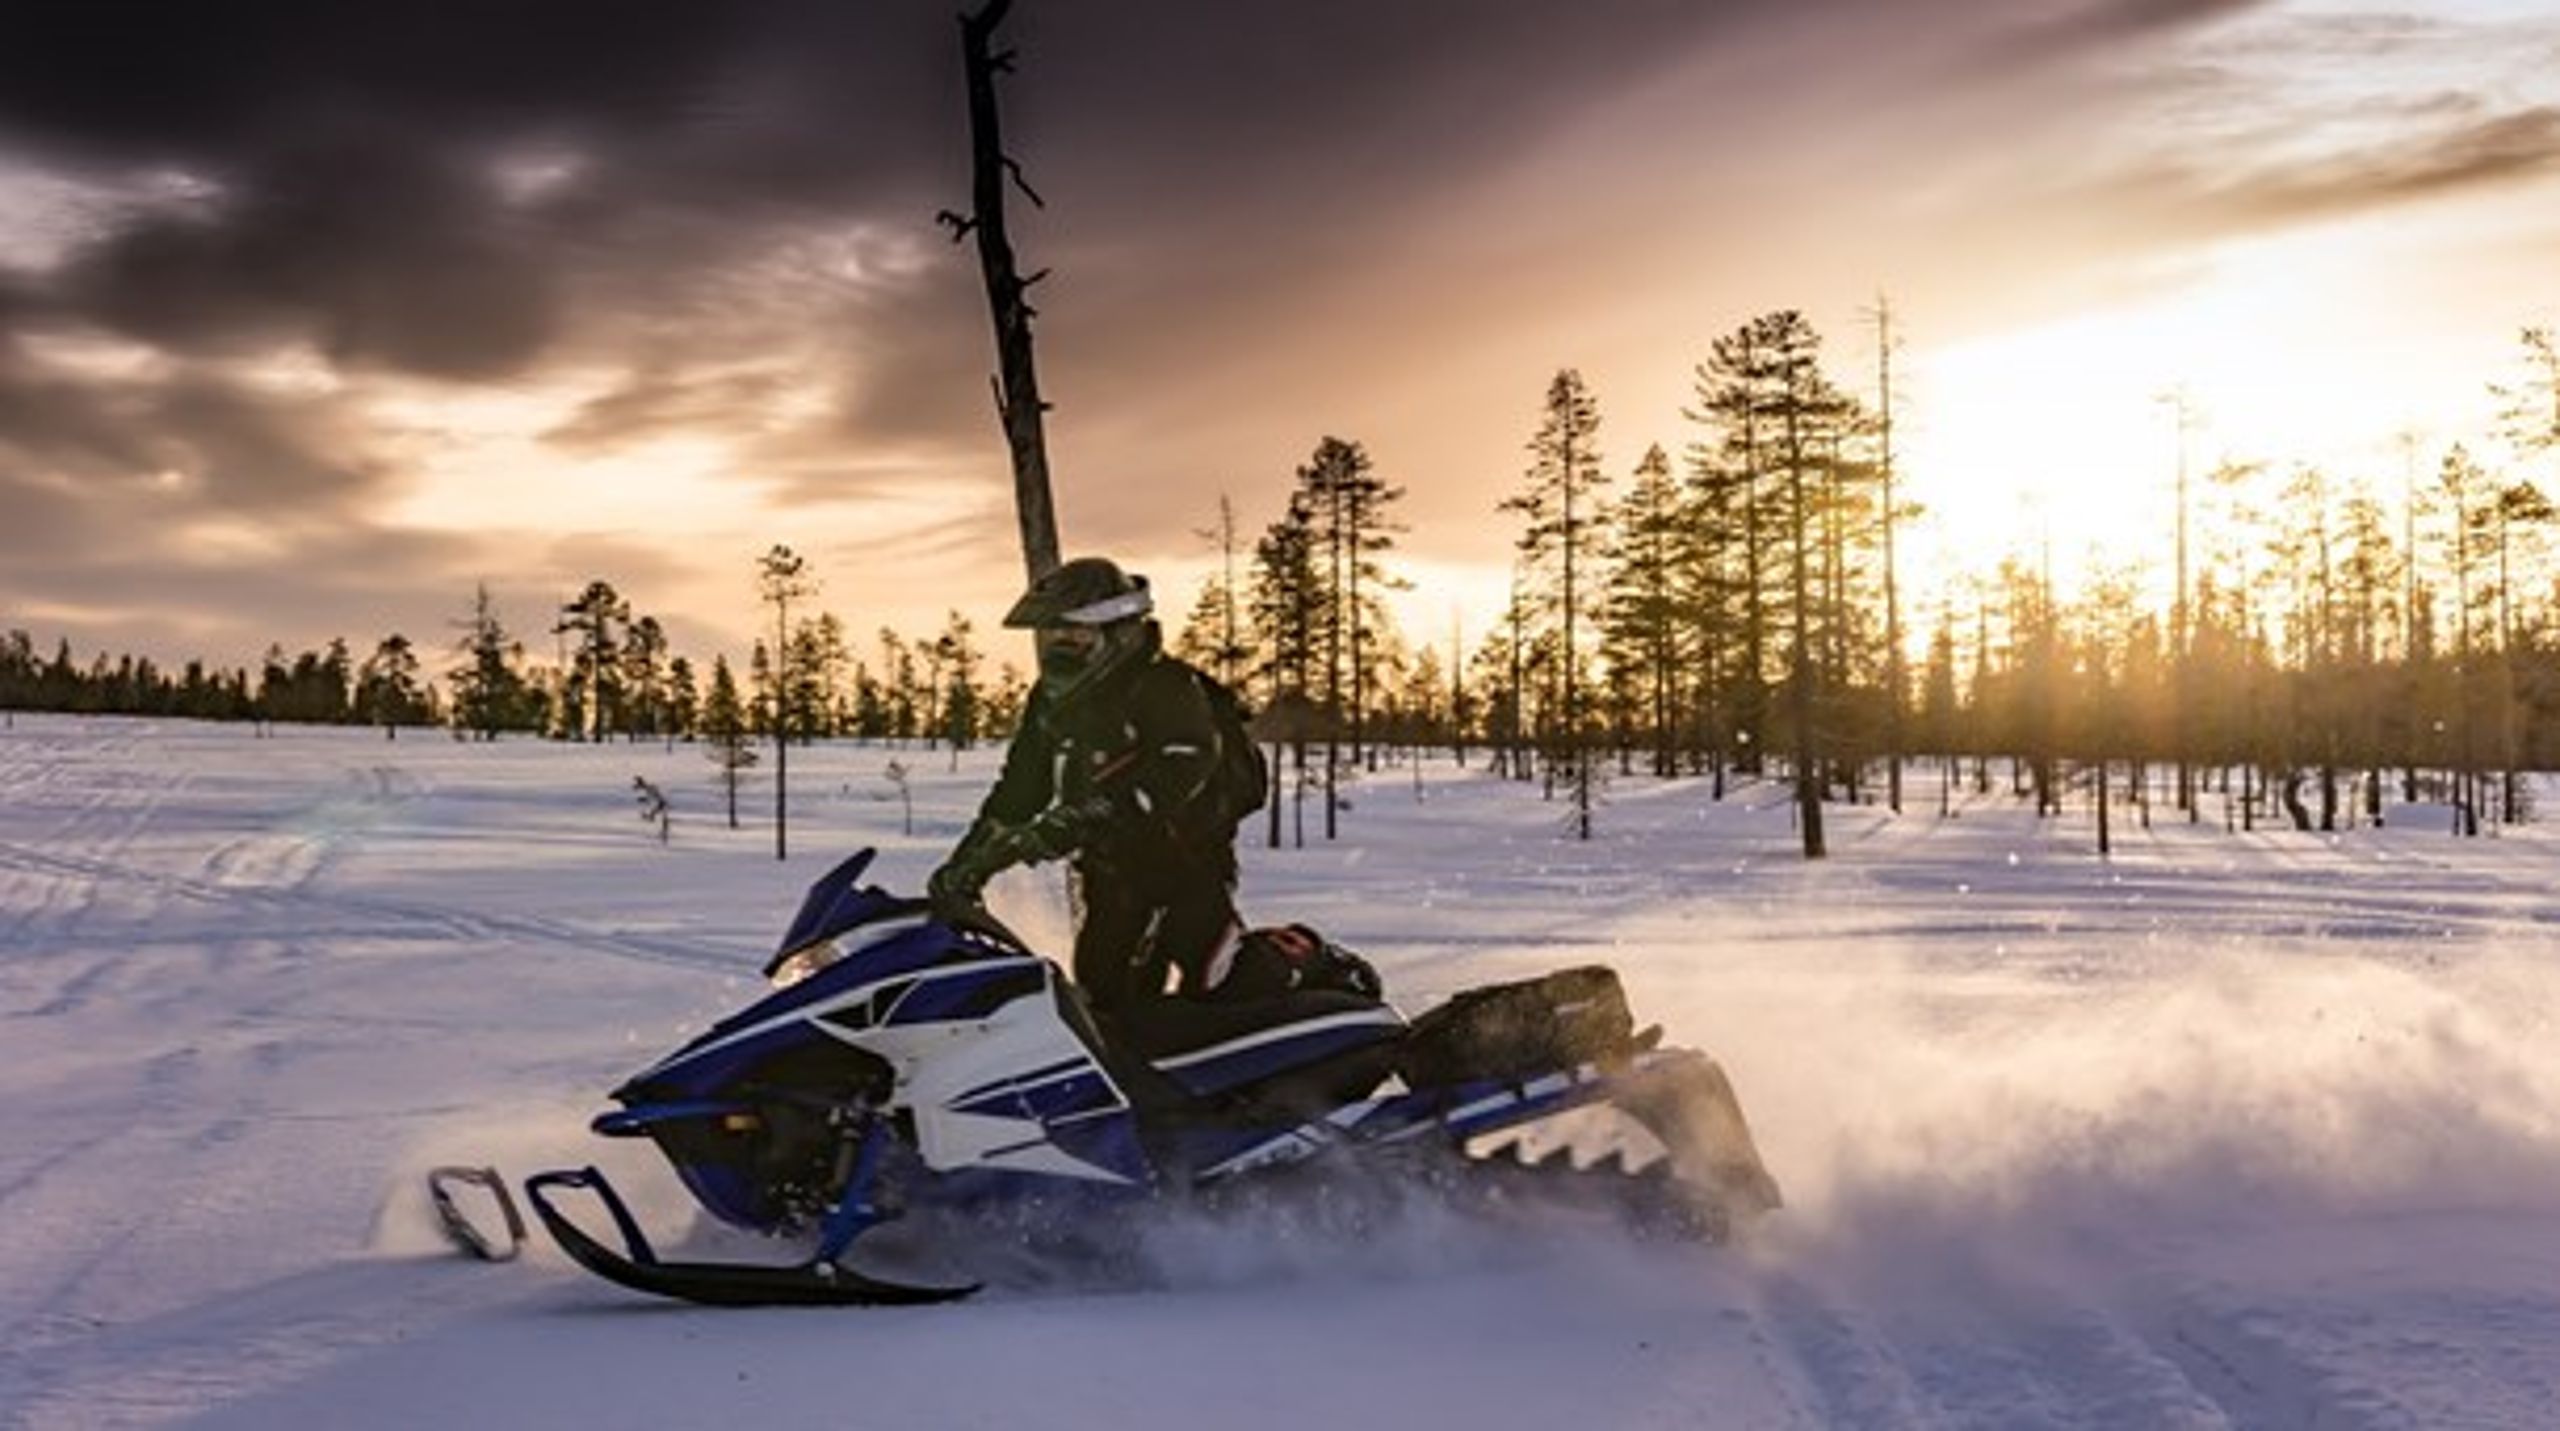 Tillväxt. I slutet av 2018 fanns det cirka 328 000 snöskotrar
och cirka 117 500 terränghjulingar registrerade i Sverige. År 1975 fanns det totalt cirka 28 500 sådana fordon.